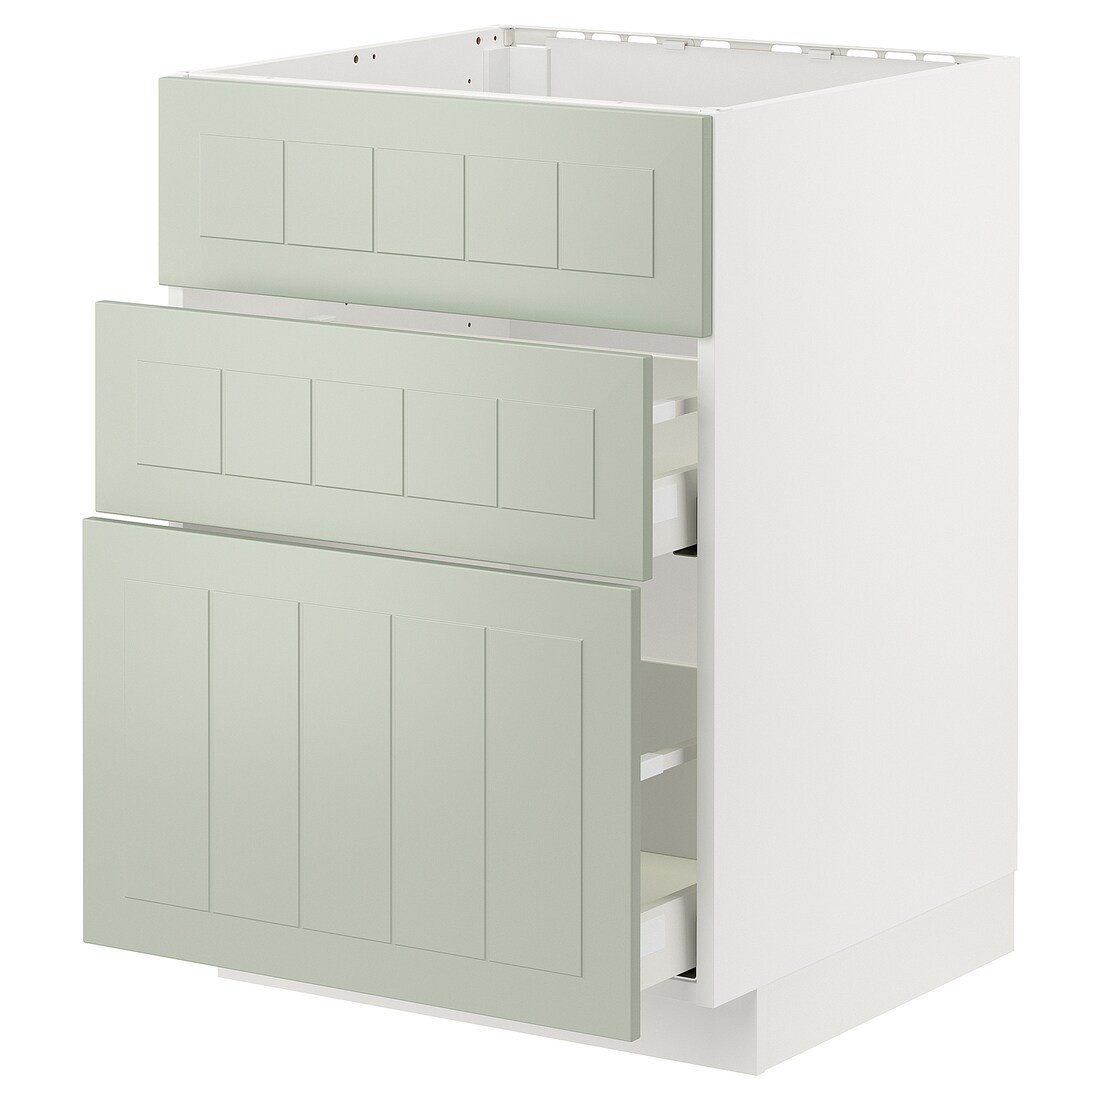 IKEA METOD МЕТОД / MAXIMERA МАКСИМЕРА Напольный шкаф для варочной панели / вытяжка с ящиком, белый / Stensund светло-зеленый, 60x60 см 79486584 | 794.865.84